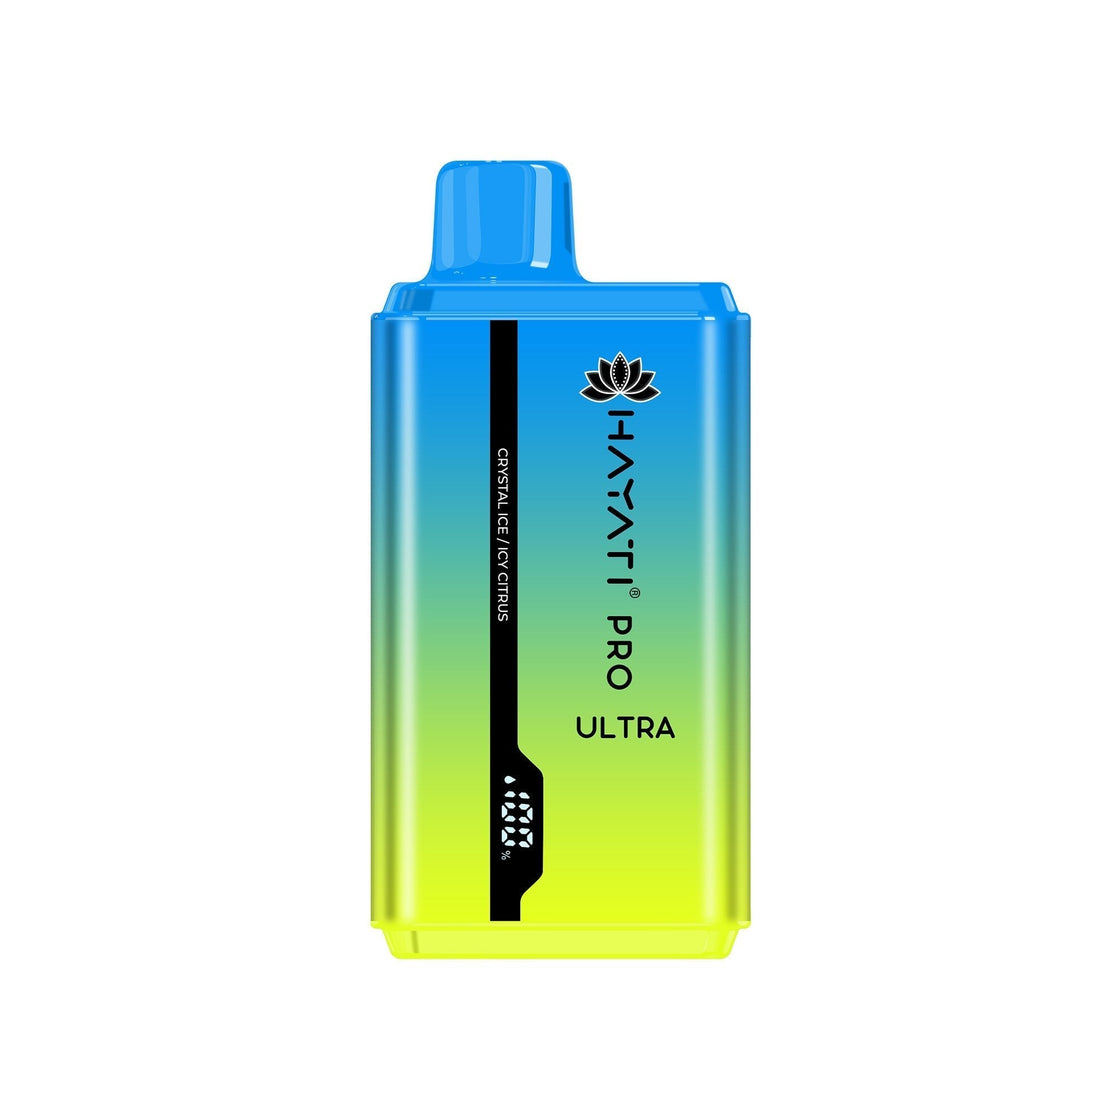 Hayati Pro Ultra 15000 Puffs Disposable Vape Bar Pod Box of 10 #Simbavapes#